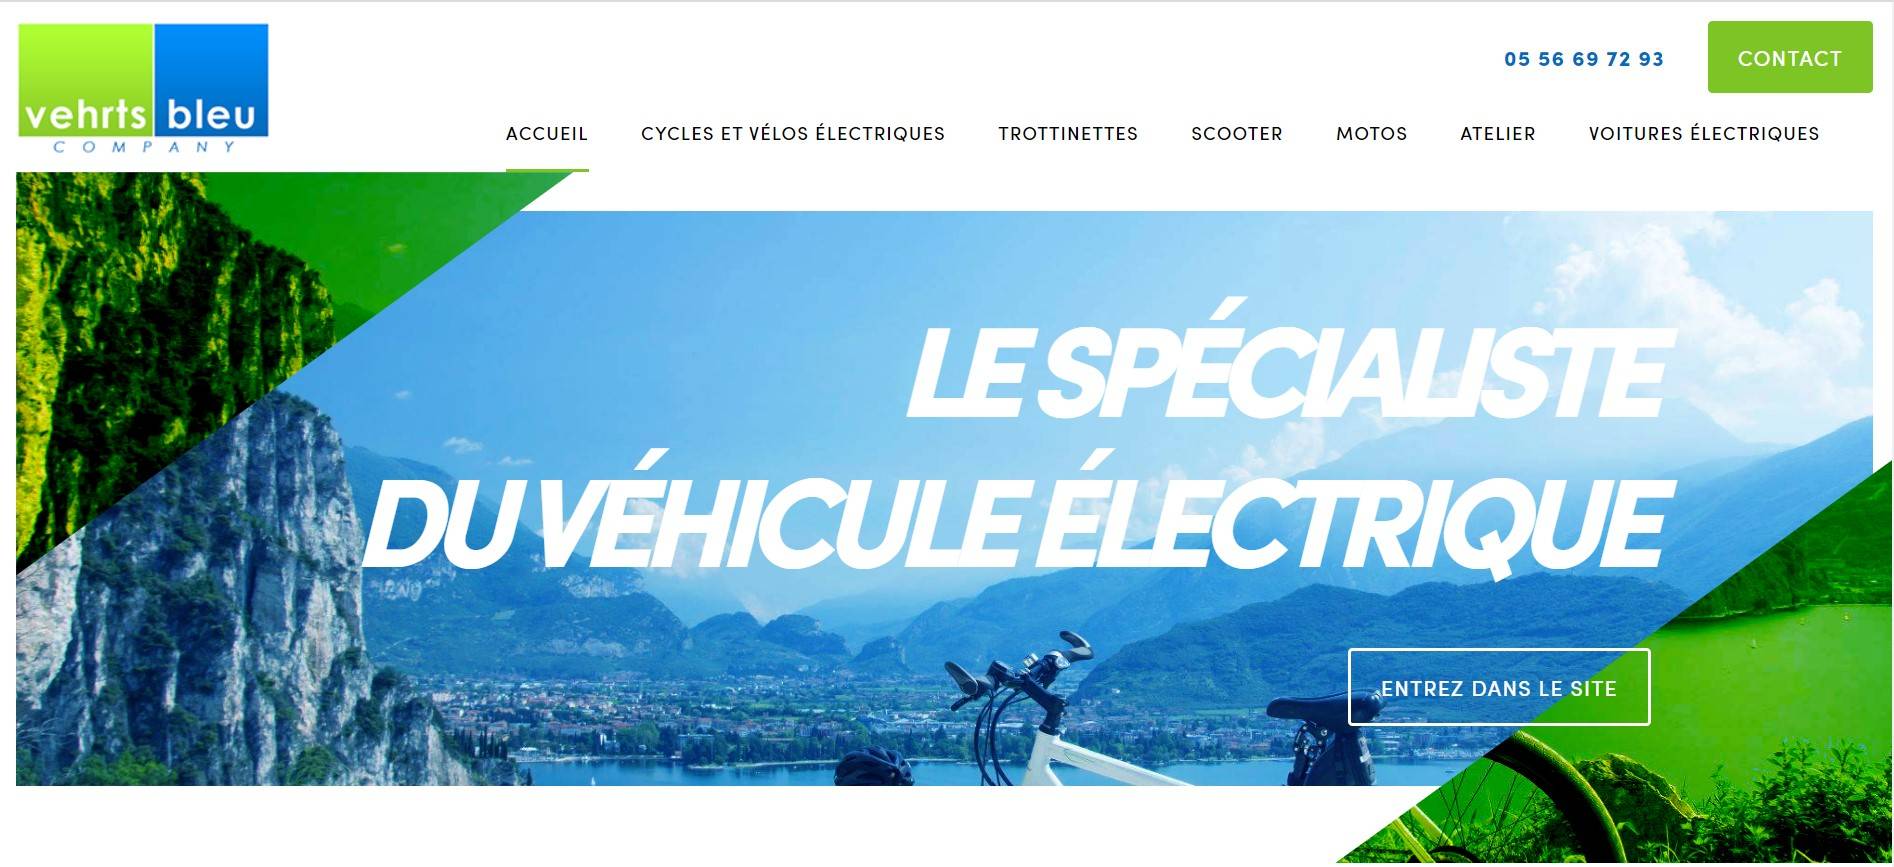 Où acheter un vélo électrique à Bordeaux ? - Vehrts Bleu Company